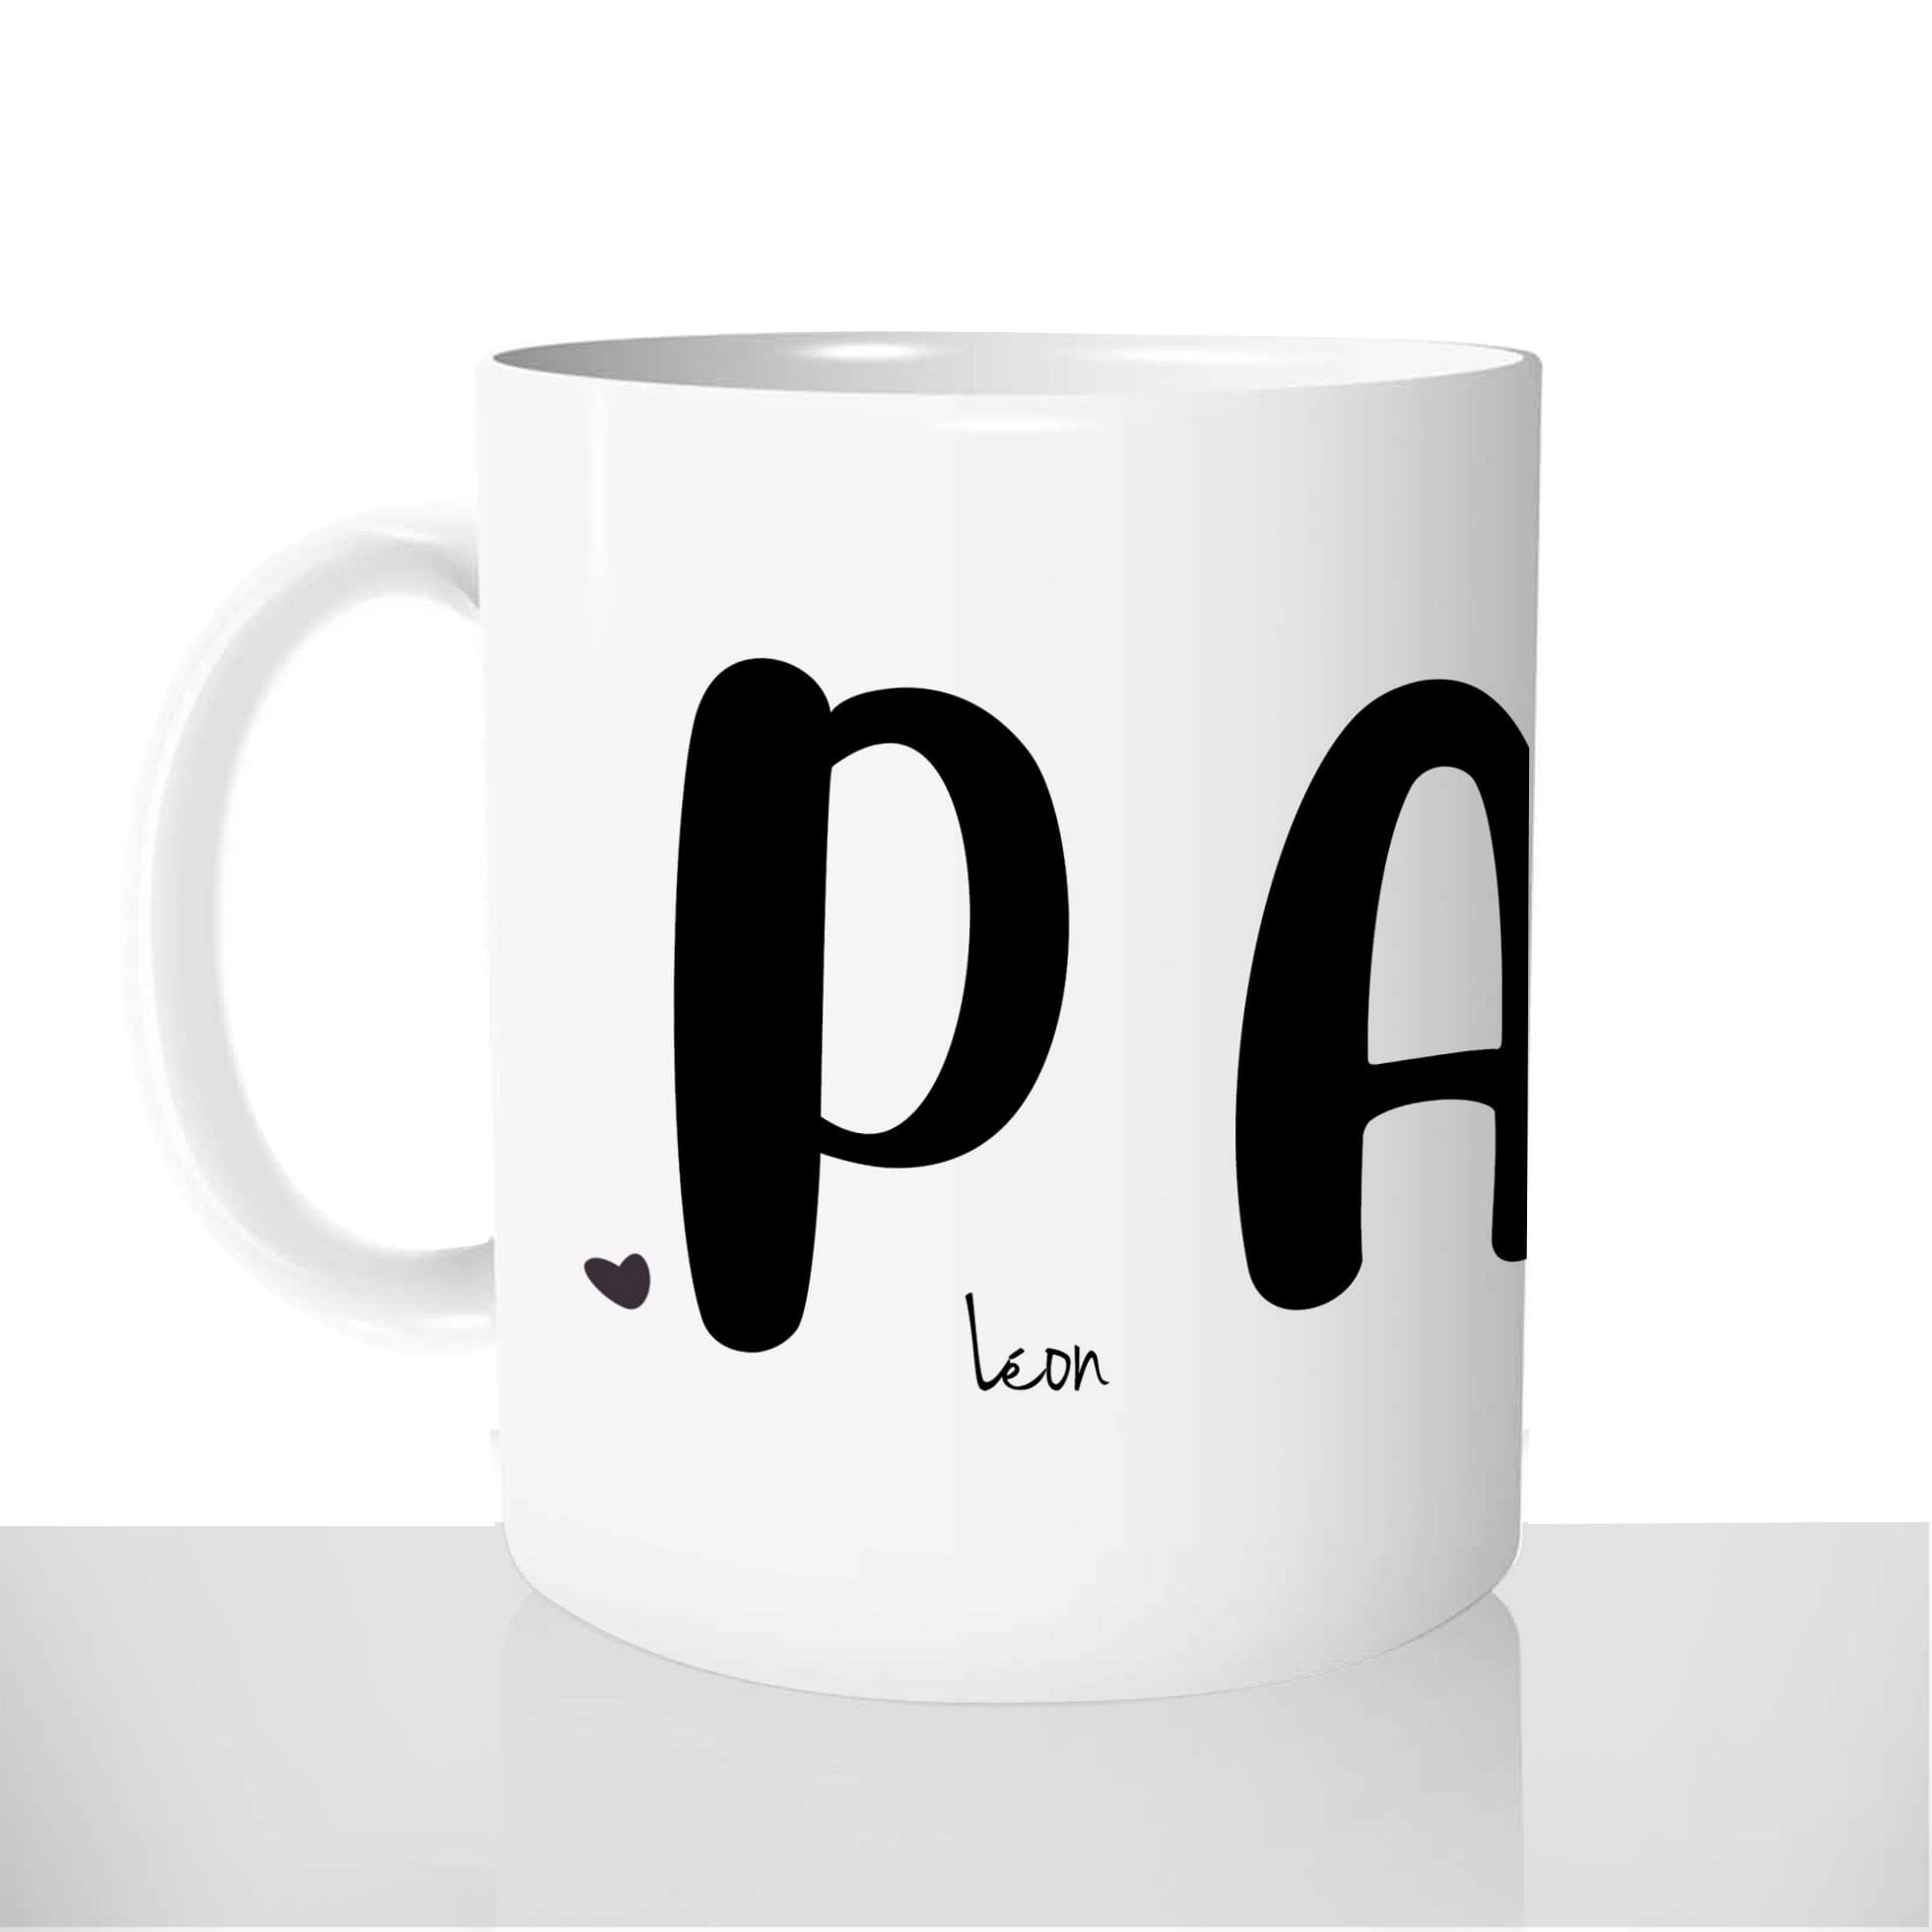 mug-blanc-céramique-11oz-france-mugs-surprise-pas-cher-papa-prénoms-des-enfants-famille-nombreuse-fete-des-peres